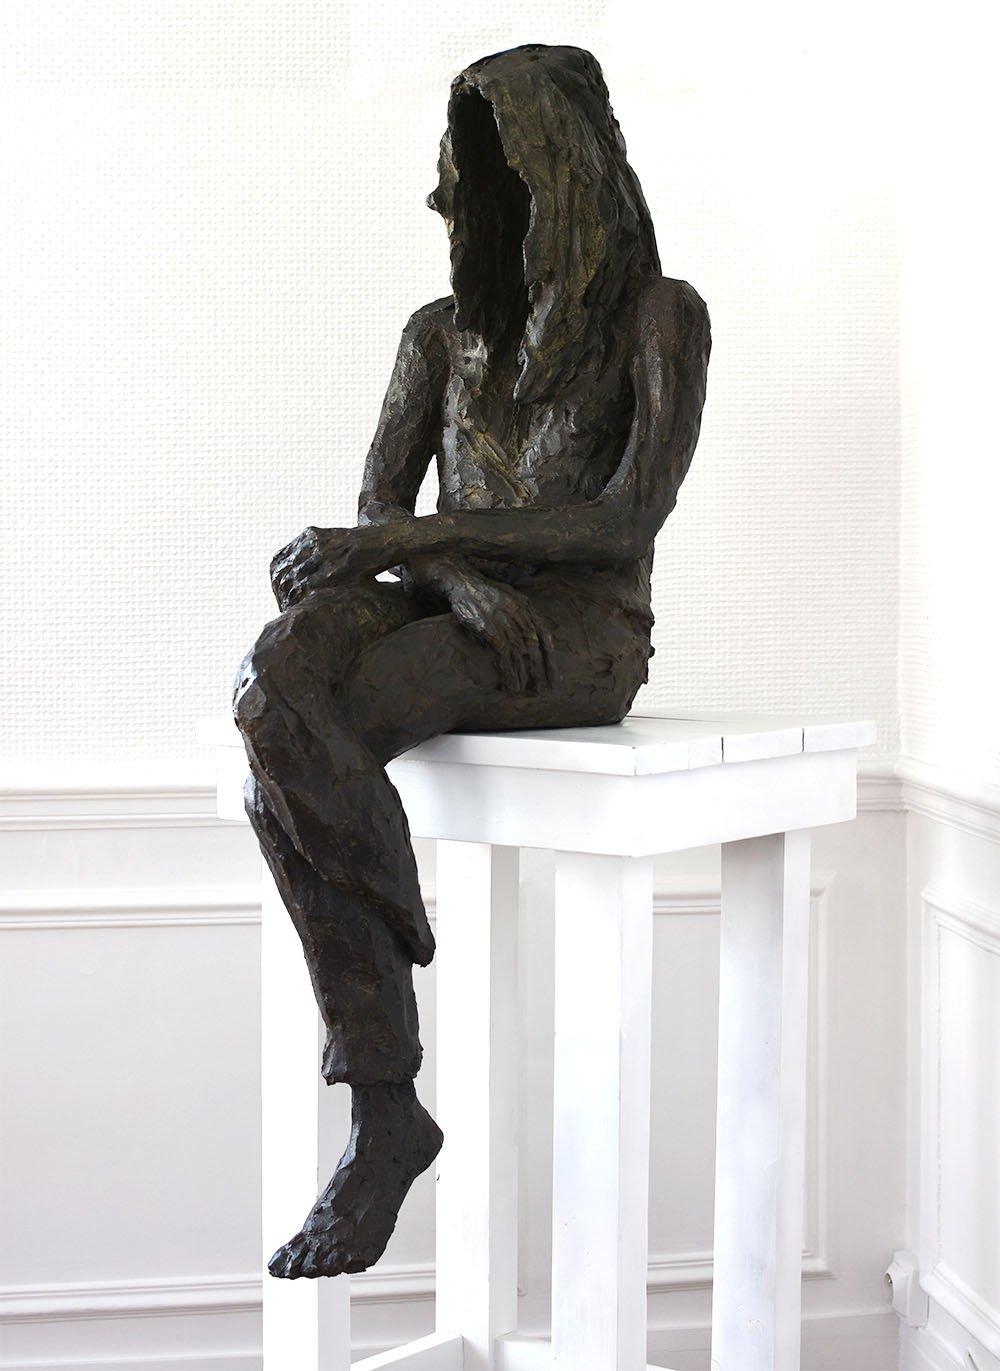 Girl's dream est une sculpture en bronze de l'artiste contemporaine française Cécile Raynal, dont les dimensions sont 155 × 50 × 63 cm (61 × 19.7 × 24.8 in). Les dimensions incluent le support en bois blanc.
La sculpture est signée et numérotée,